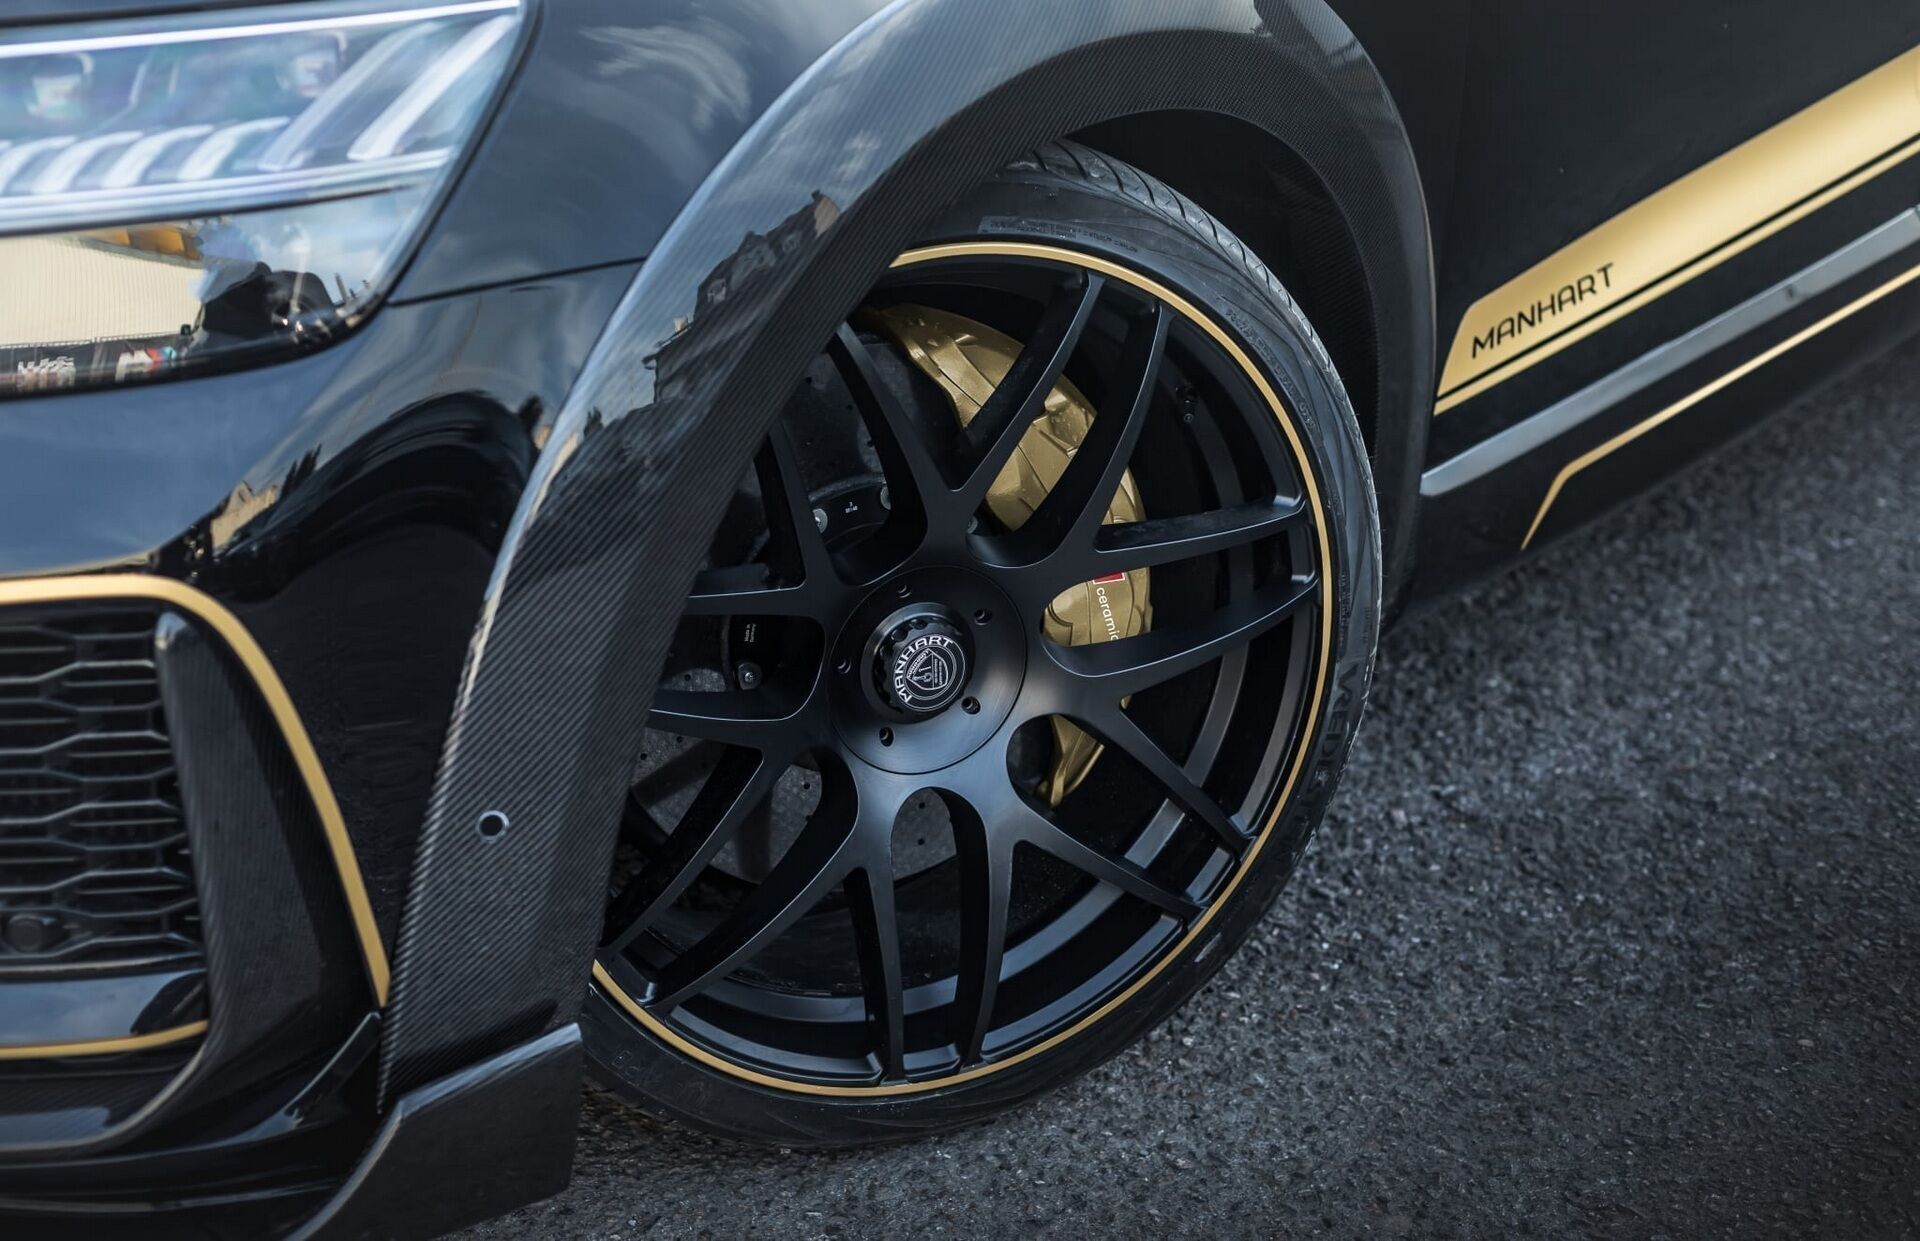 Крупные 24-дюймовые колесные диски Manhart “Classic line” в черном матовом цвете украшены золотистыми вставками